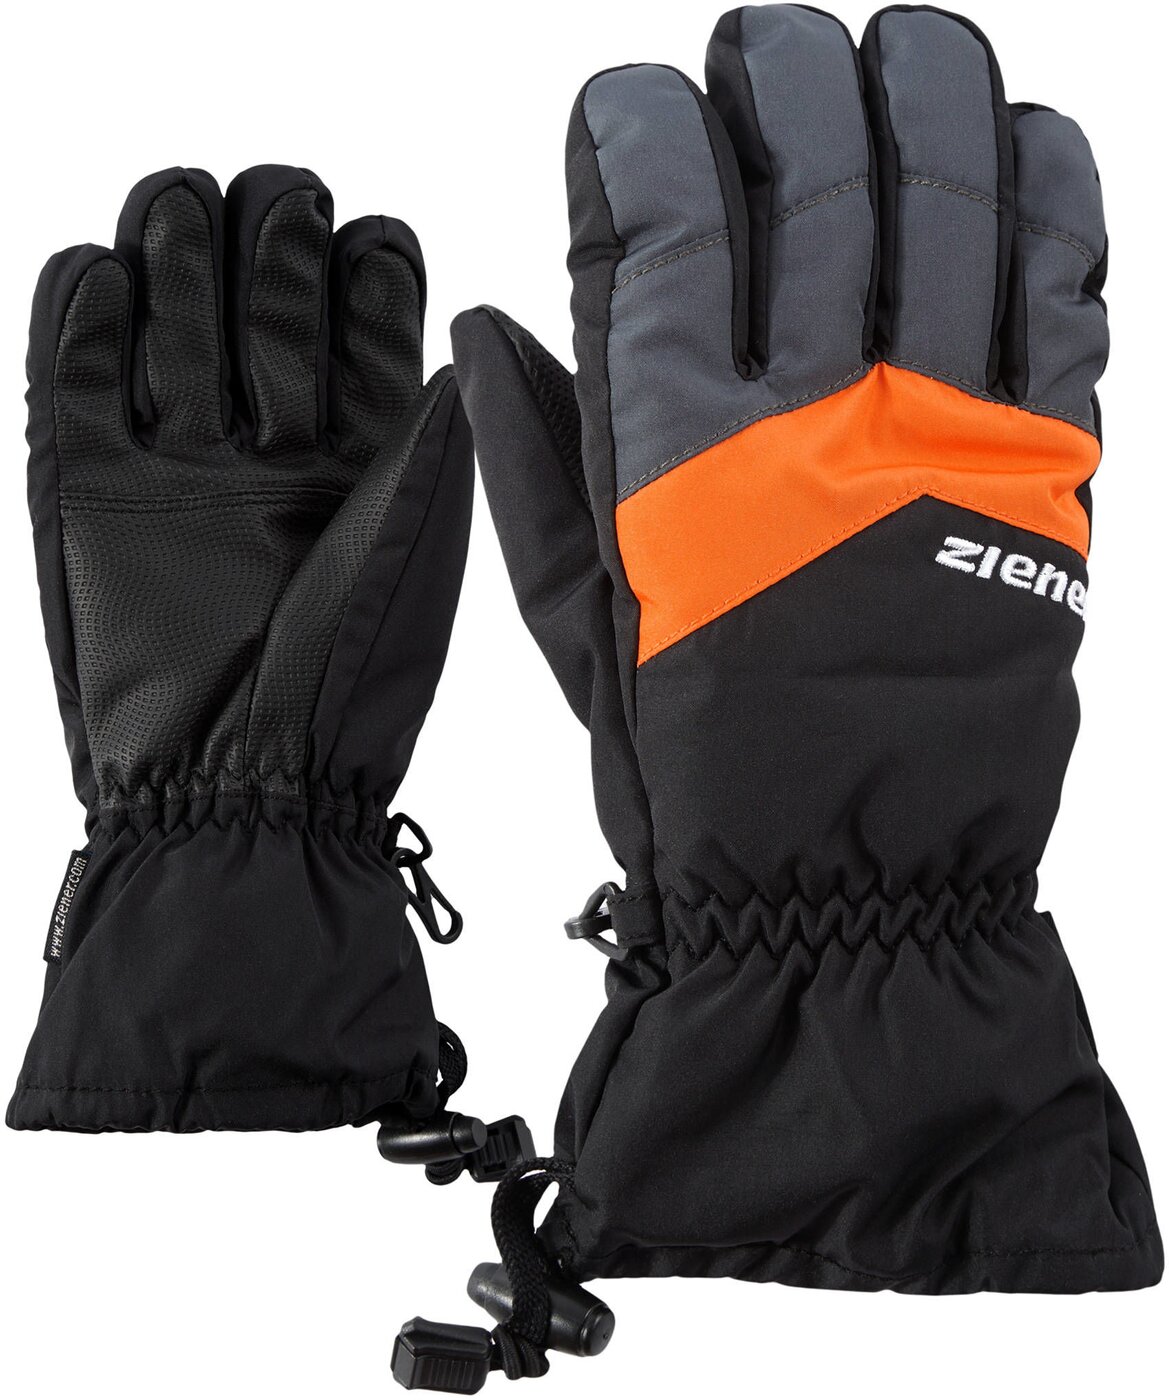 Ziener online junior LETT AS(R) glove kaufen